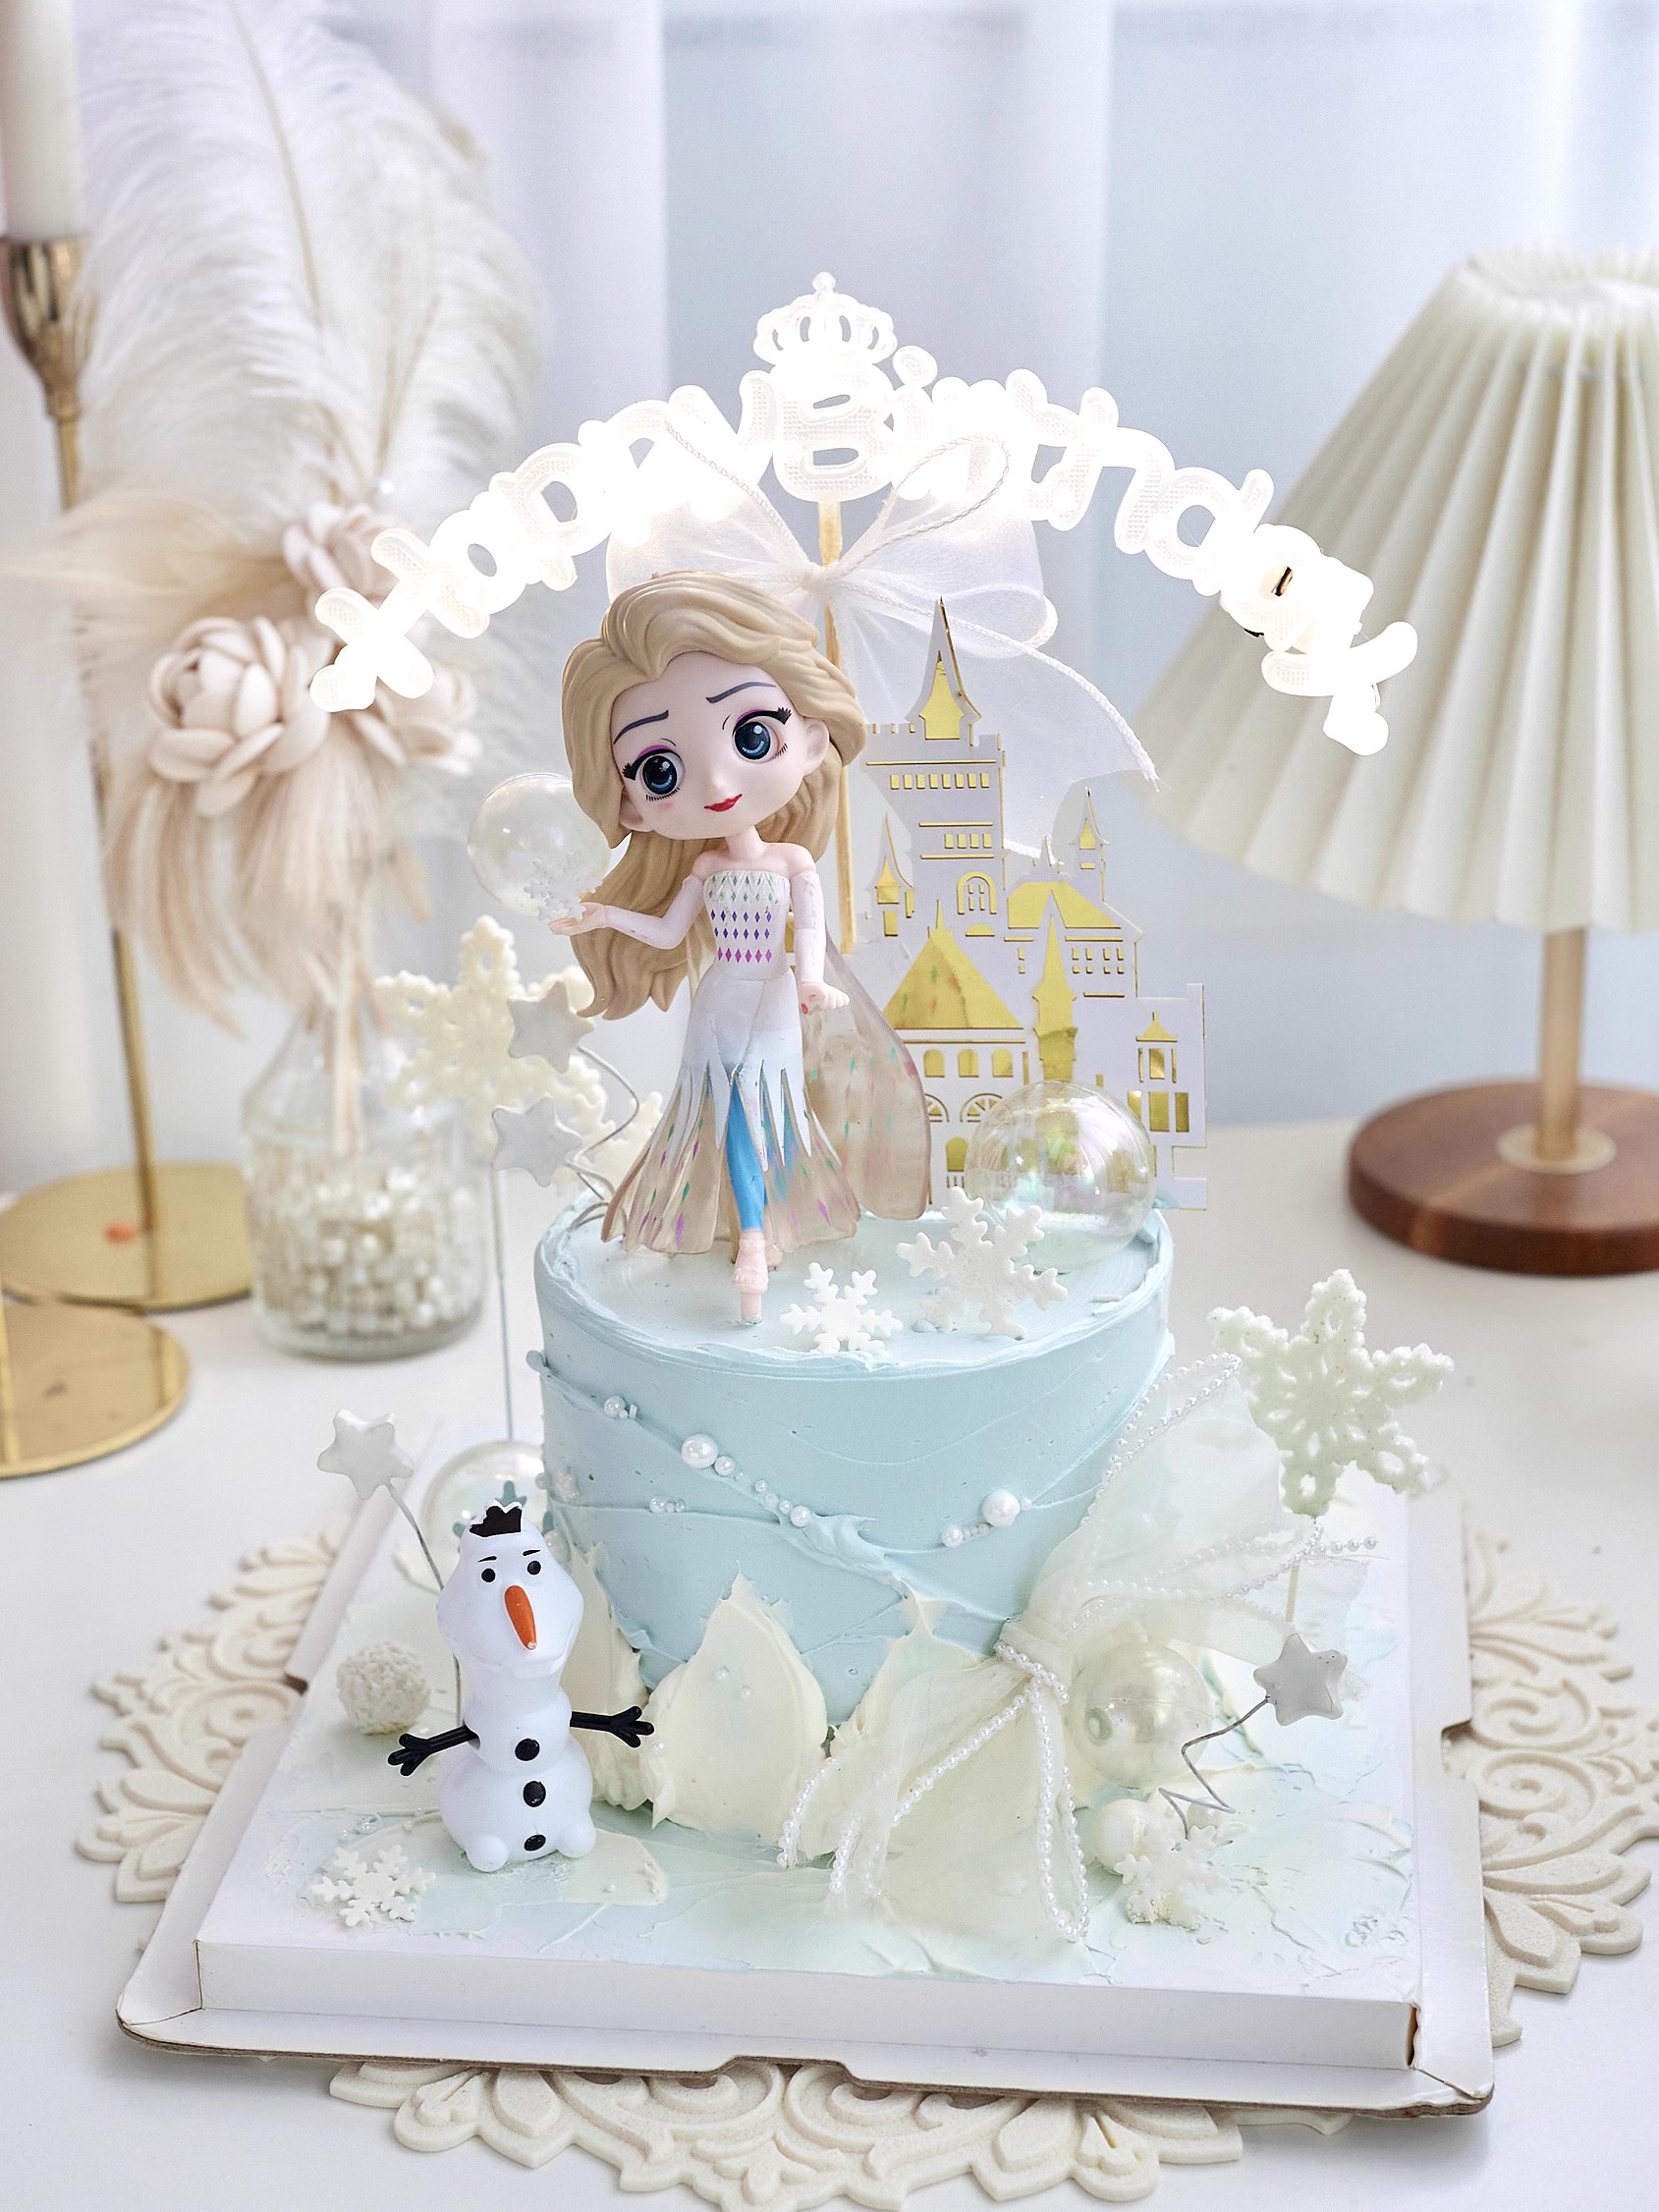 艾莎爱莎公主城堡蛋糕装饰摆件生日快乐字母发光灯女孩女生插件